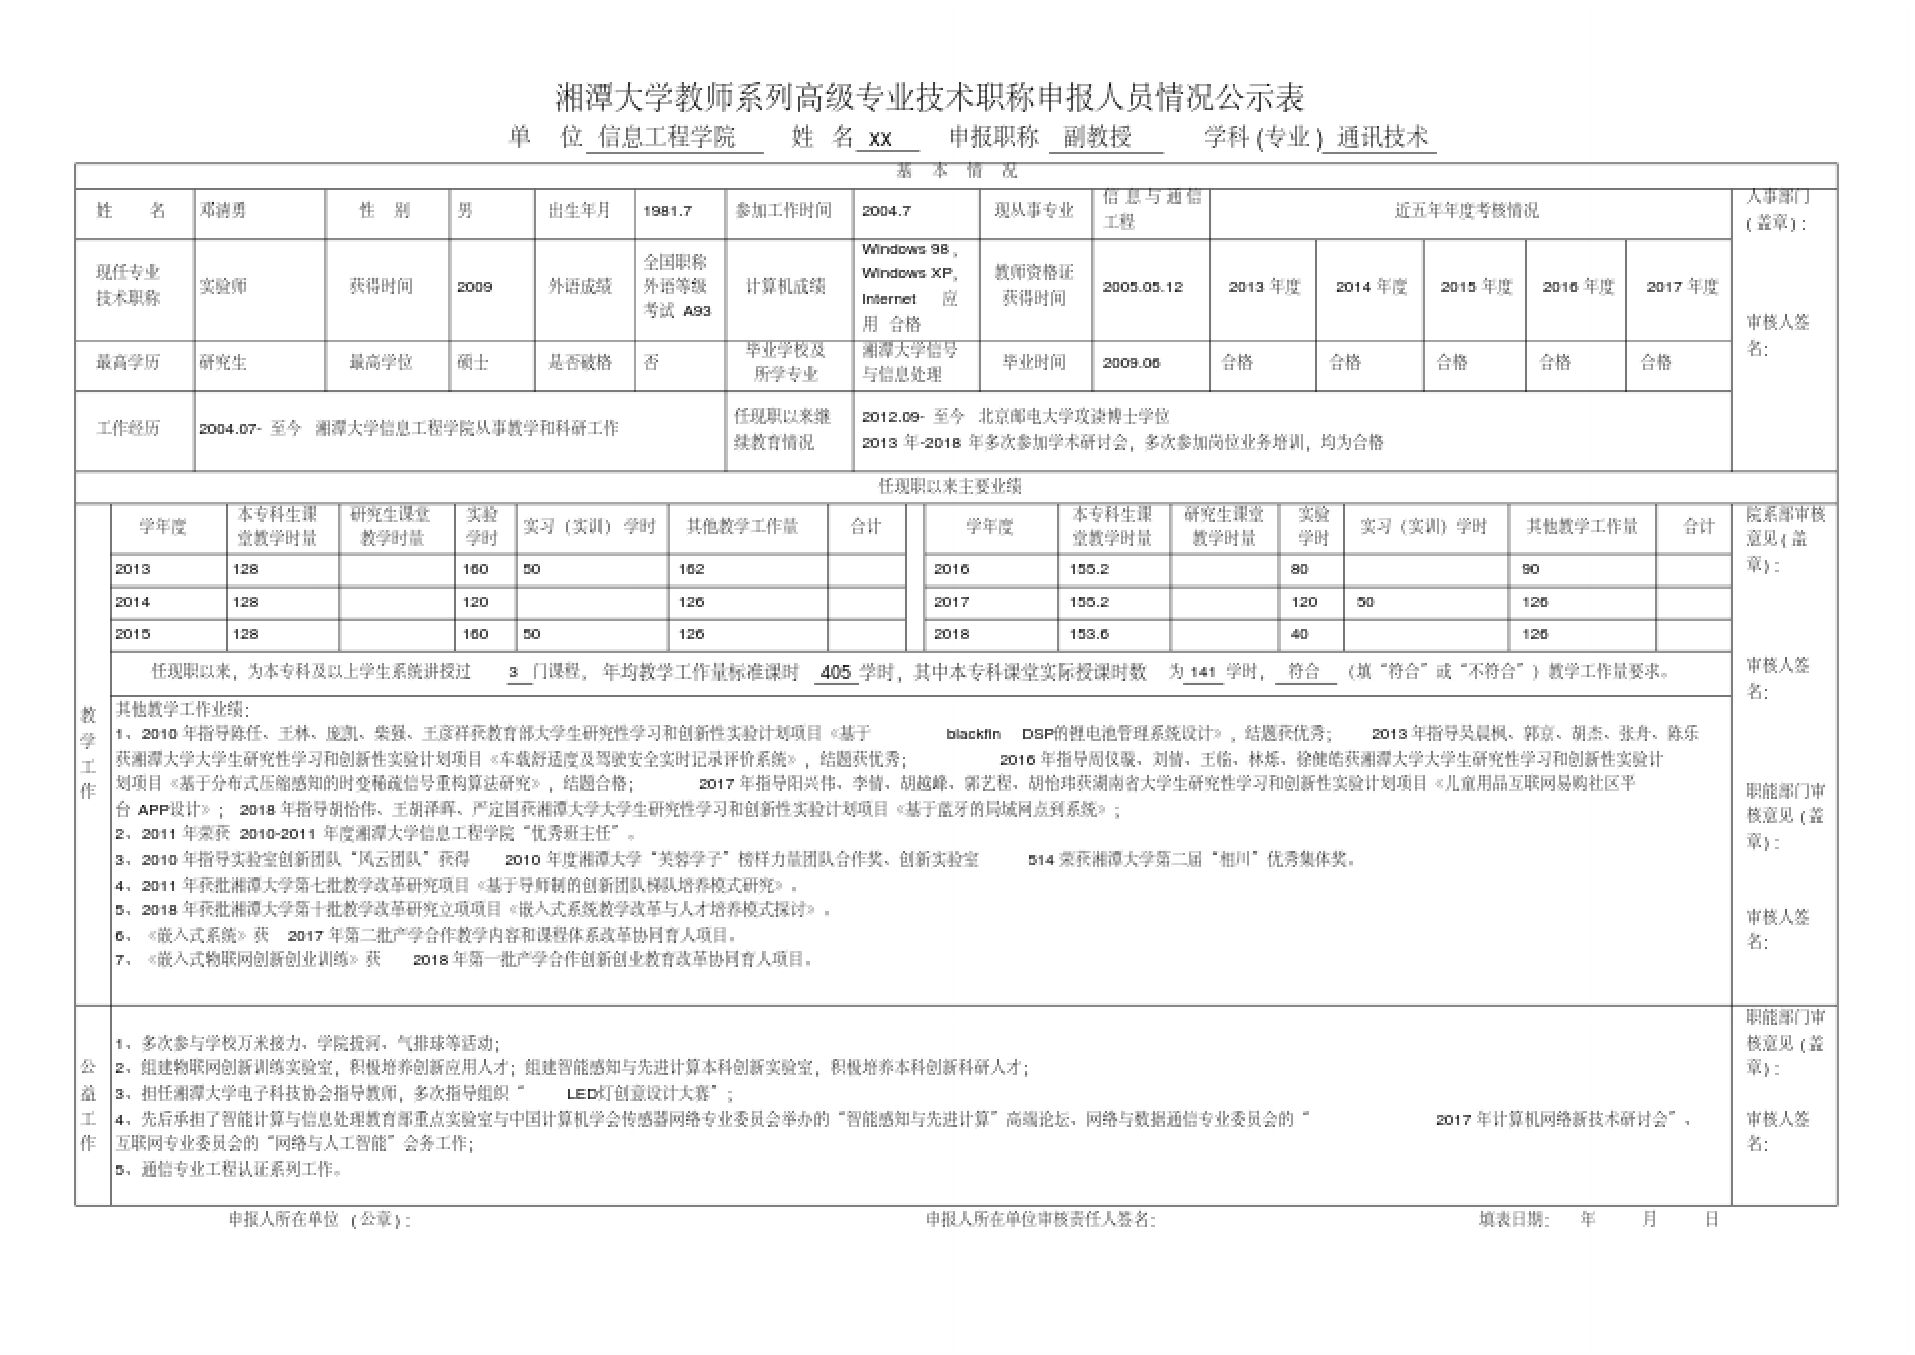 湘潭大学教师系列高级专业技术职称申报人员情况公示表.doc_1.png